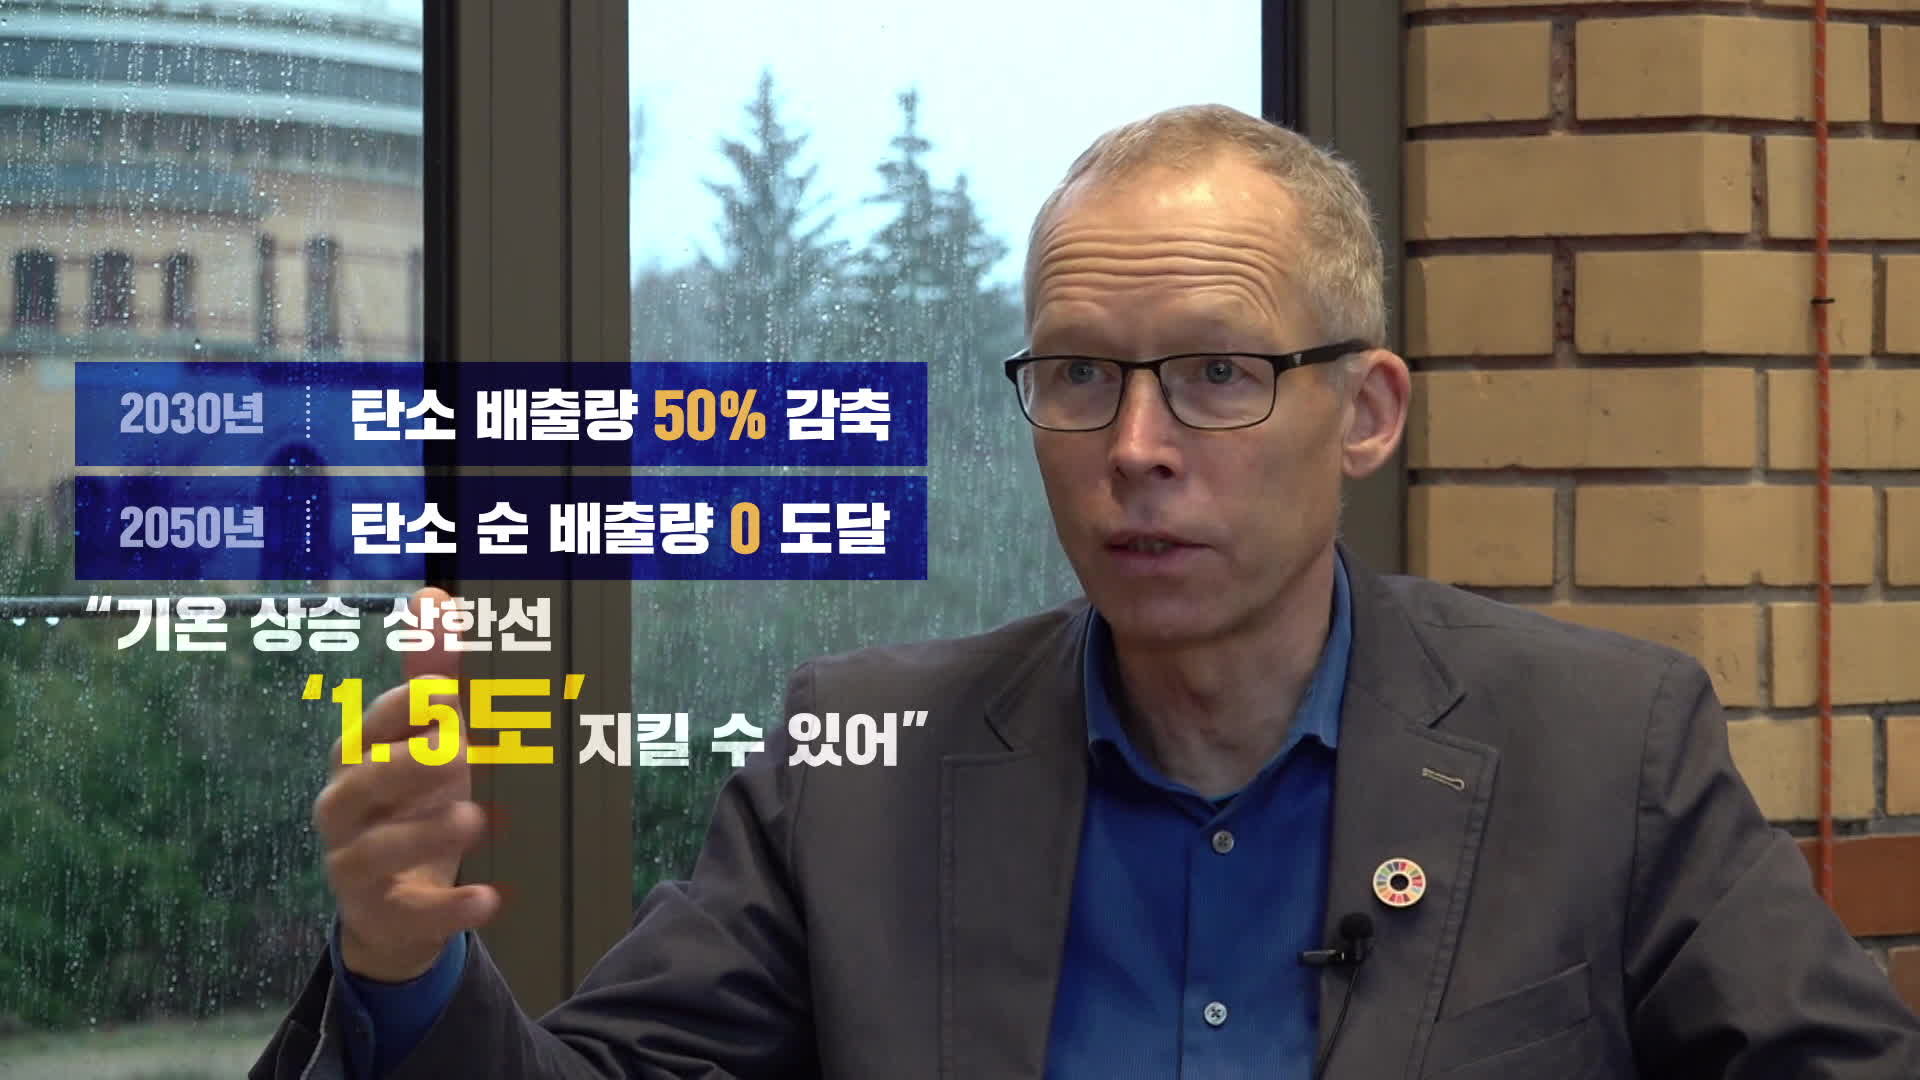 요한 록스트롬 포츠담 기후영향연구소 소장과 KBS 인터뷰